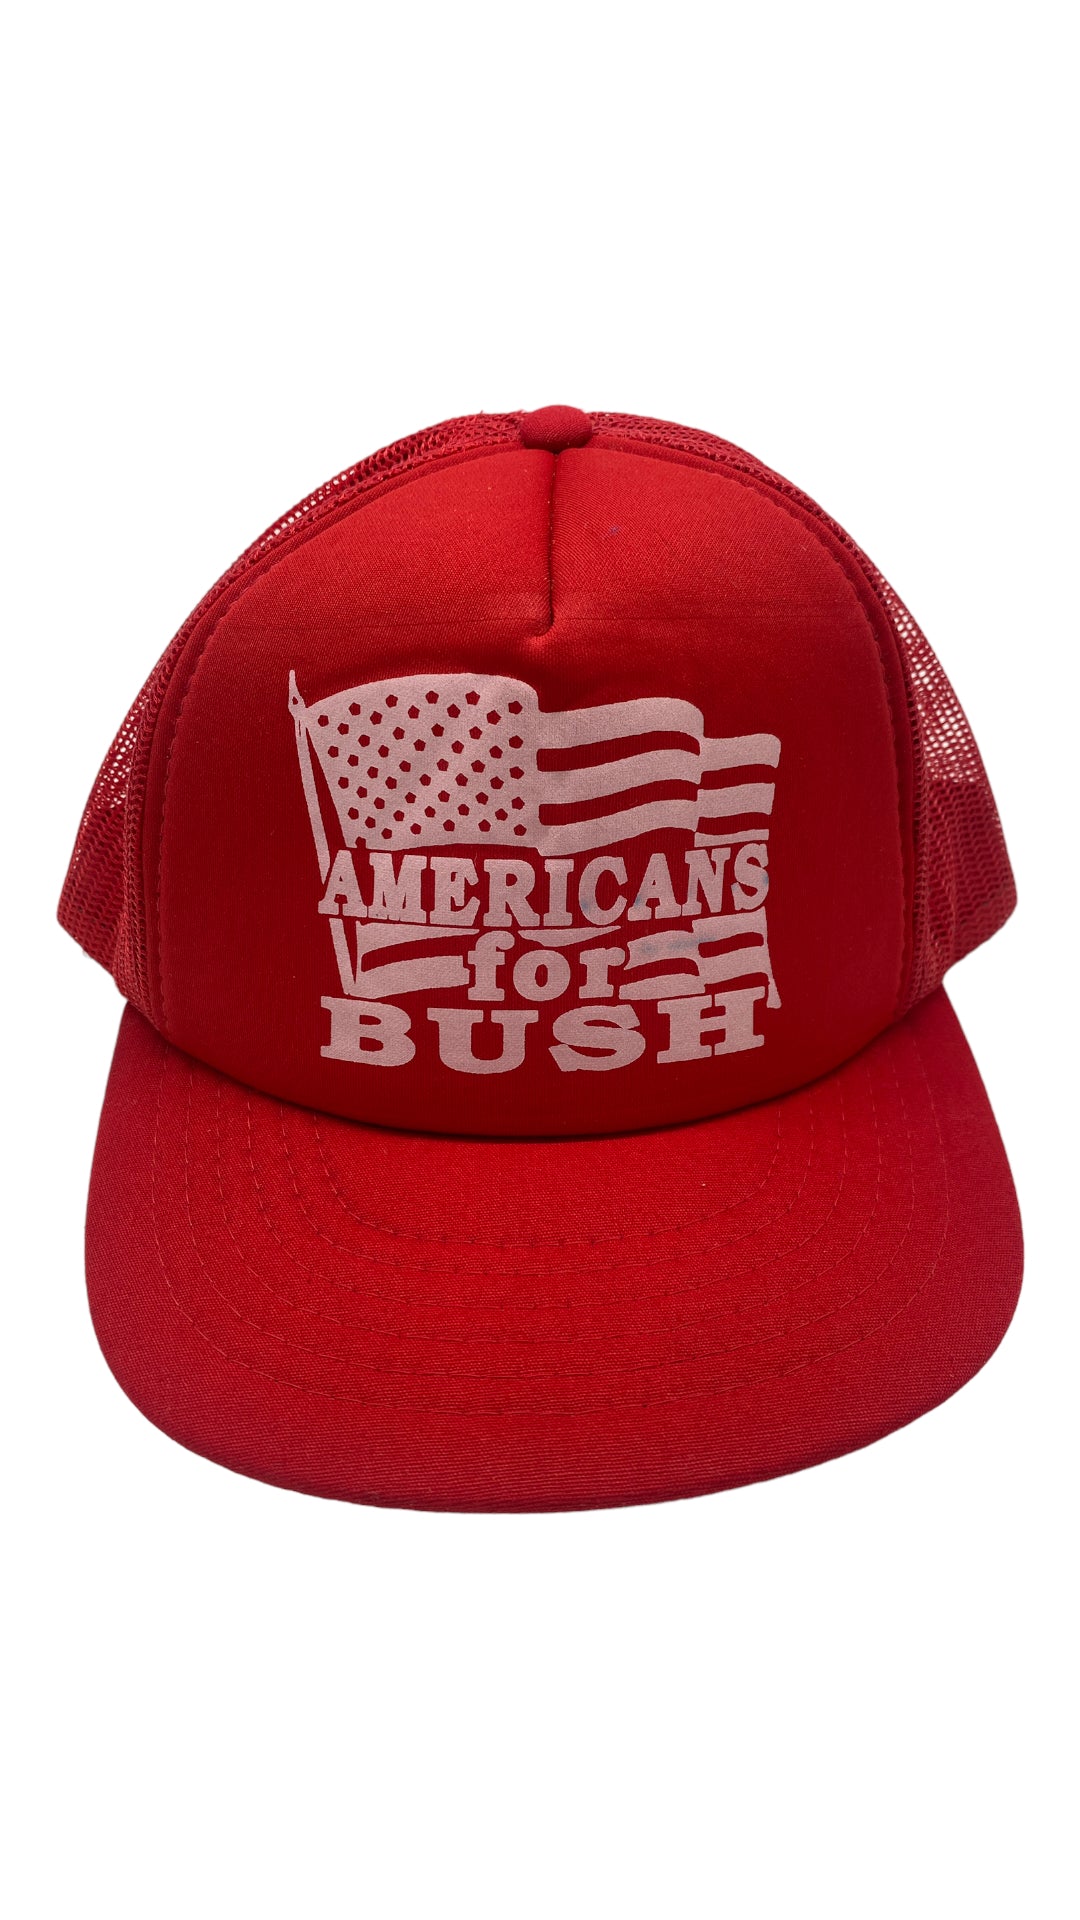 VTG “Americans For Bush” Snapback Hat